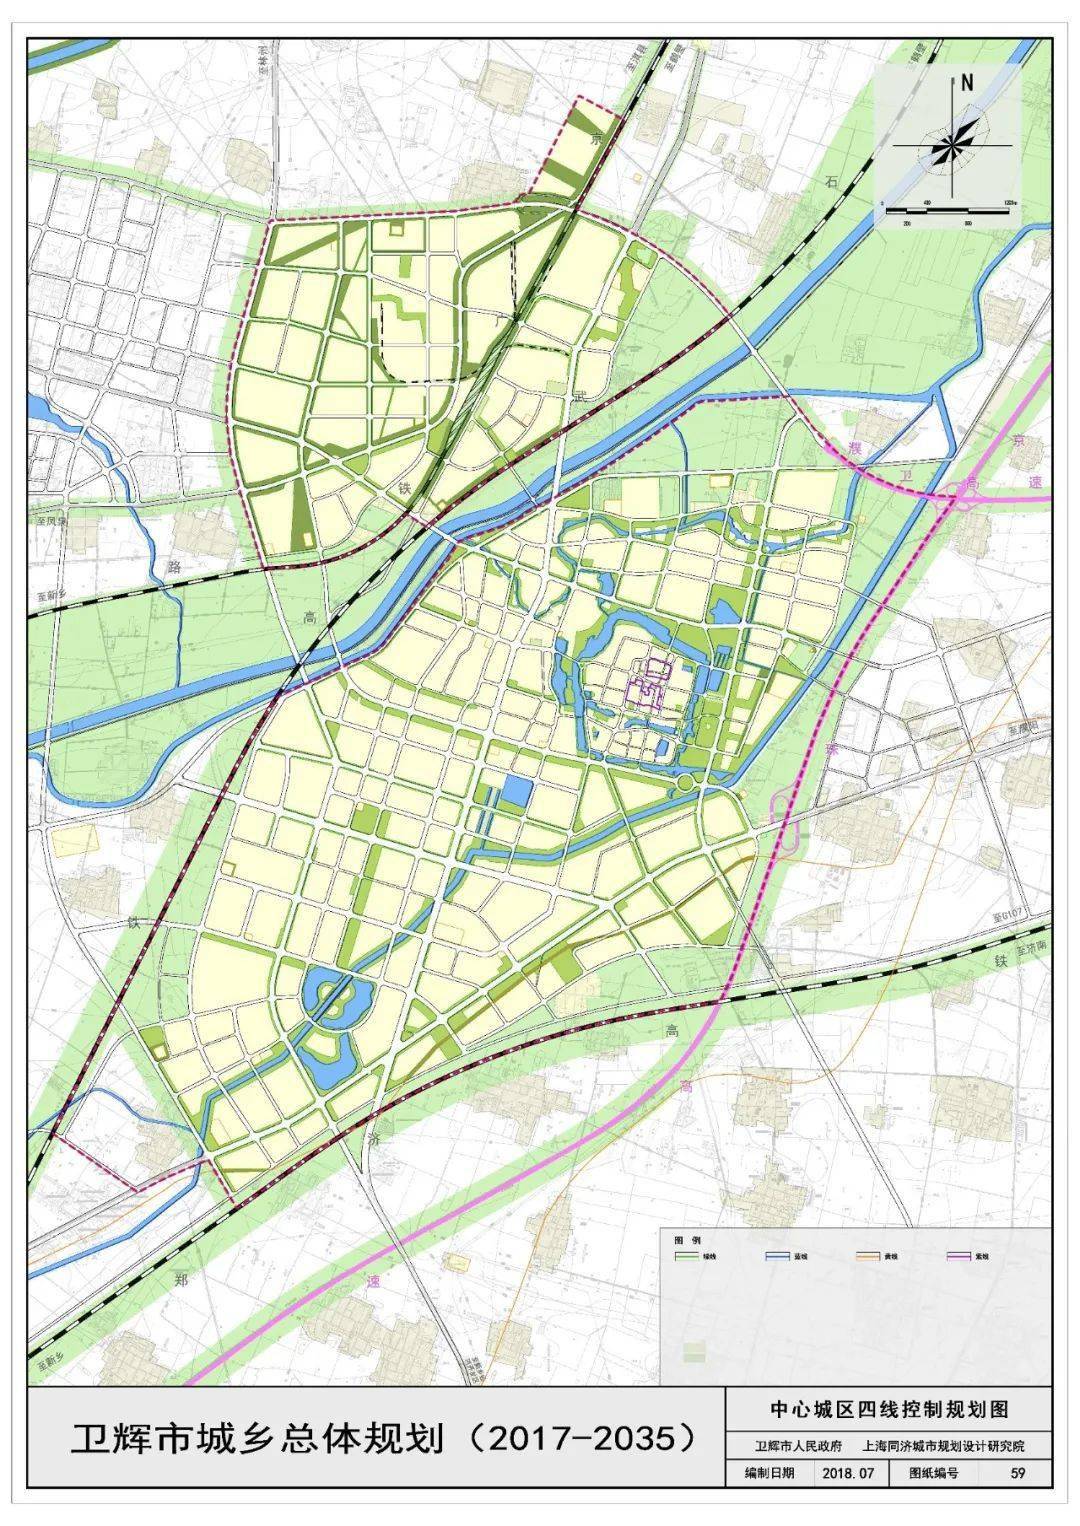 2017----2035年卫辉市城乡总体规划和绿地规划出炉!